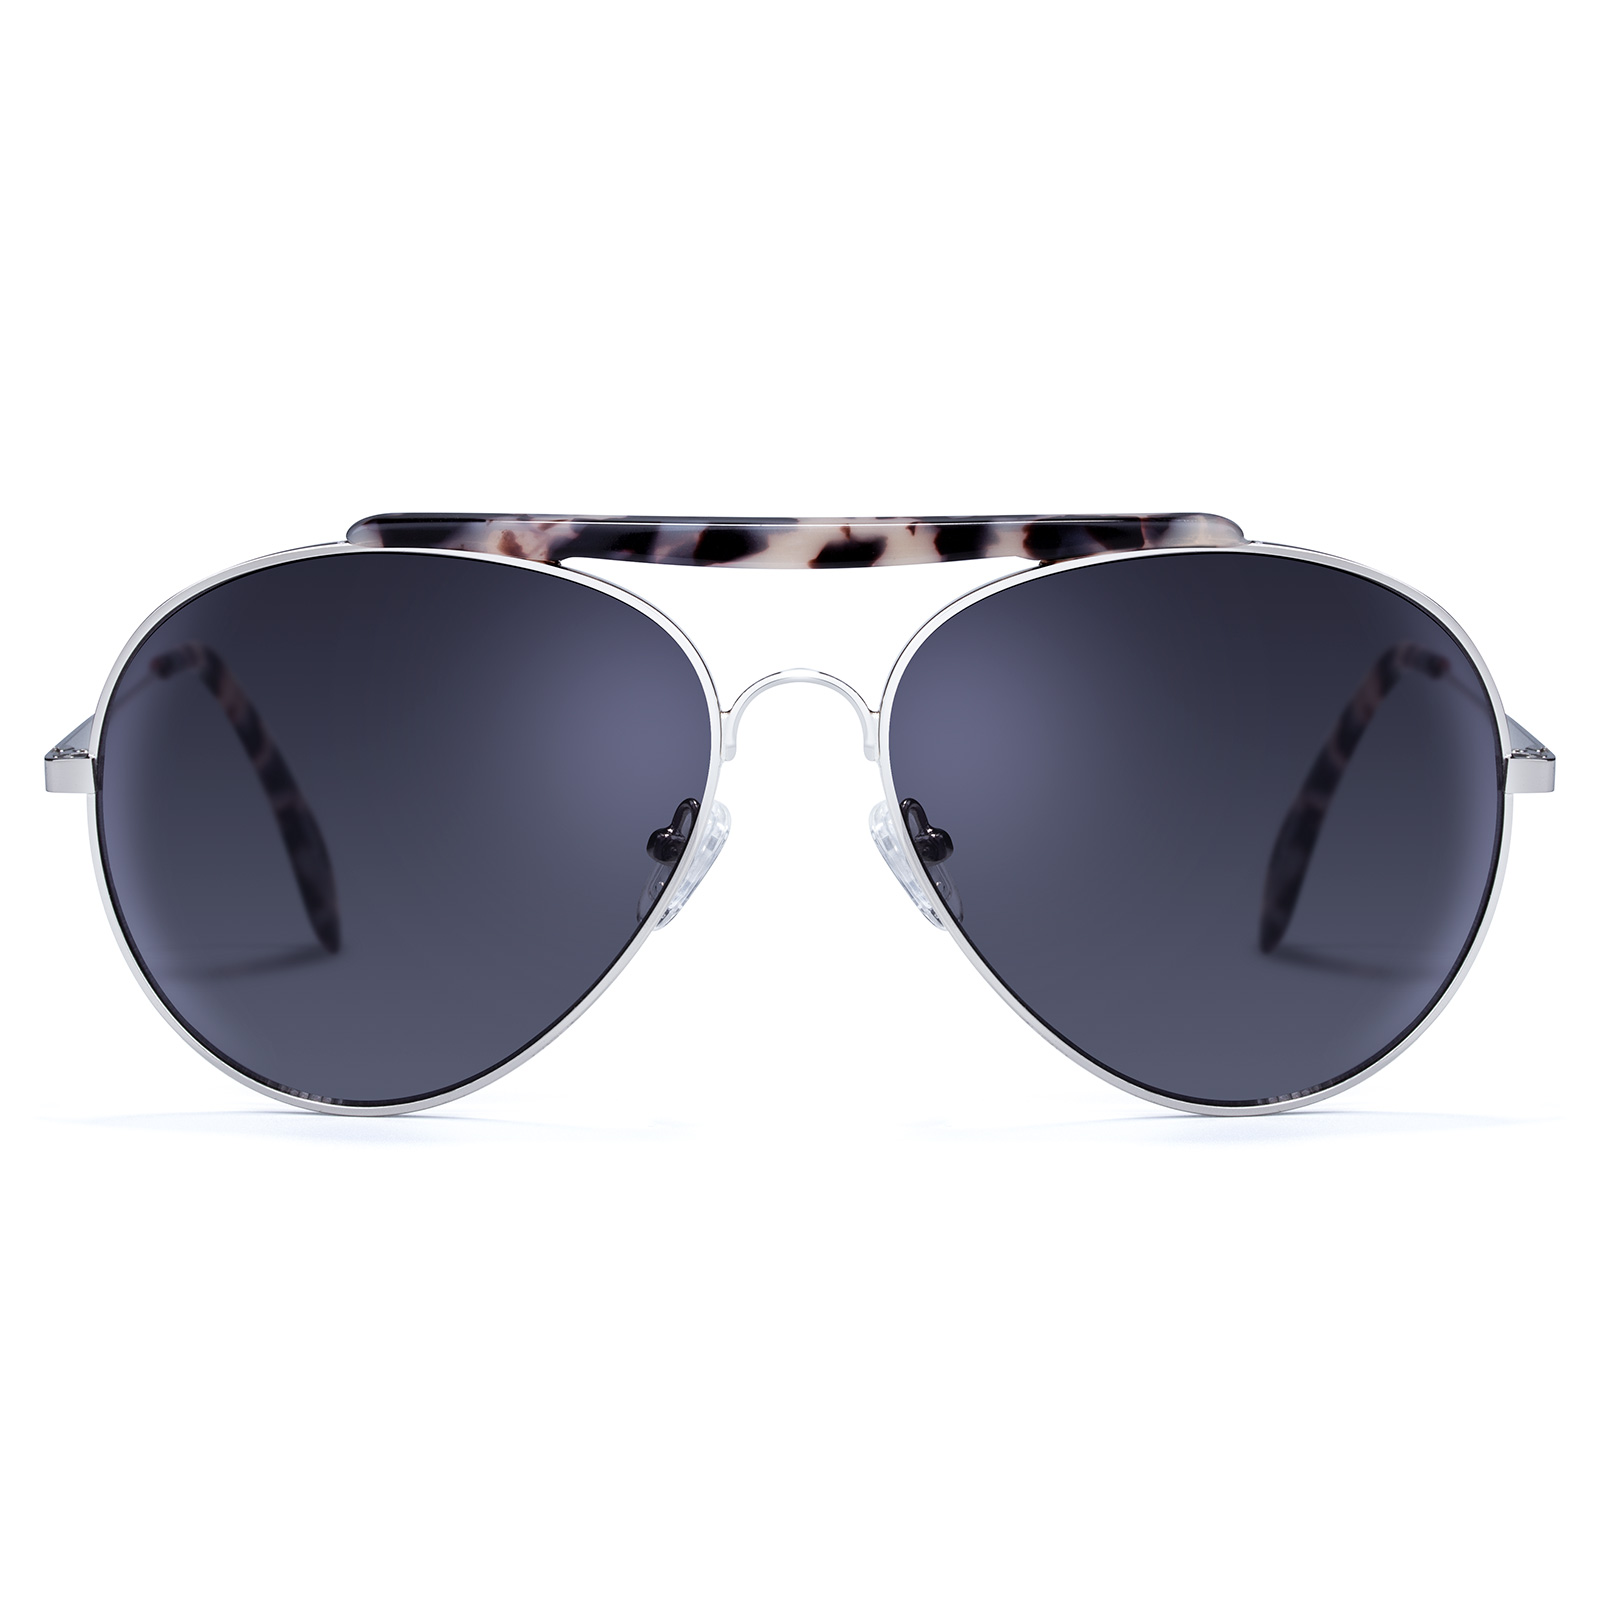 Sunglasses for Men Women Polarized Sun Glasses Oversized Metal Frame 100% uv protection